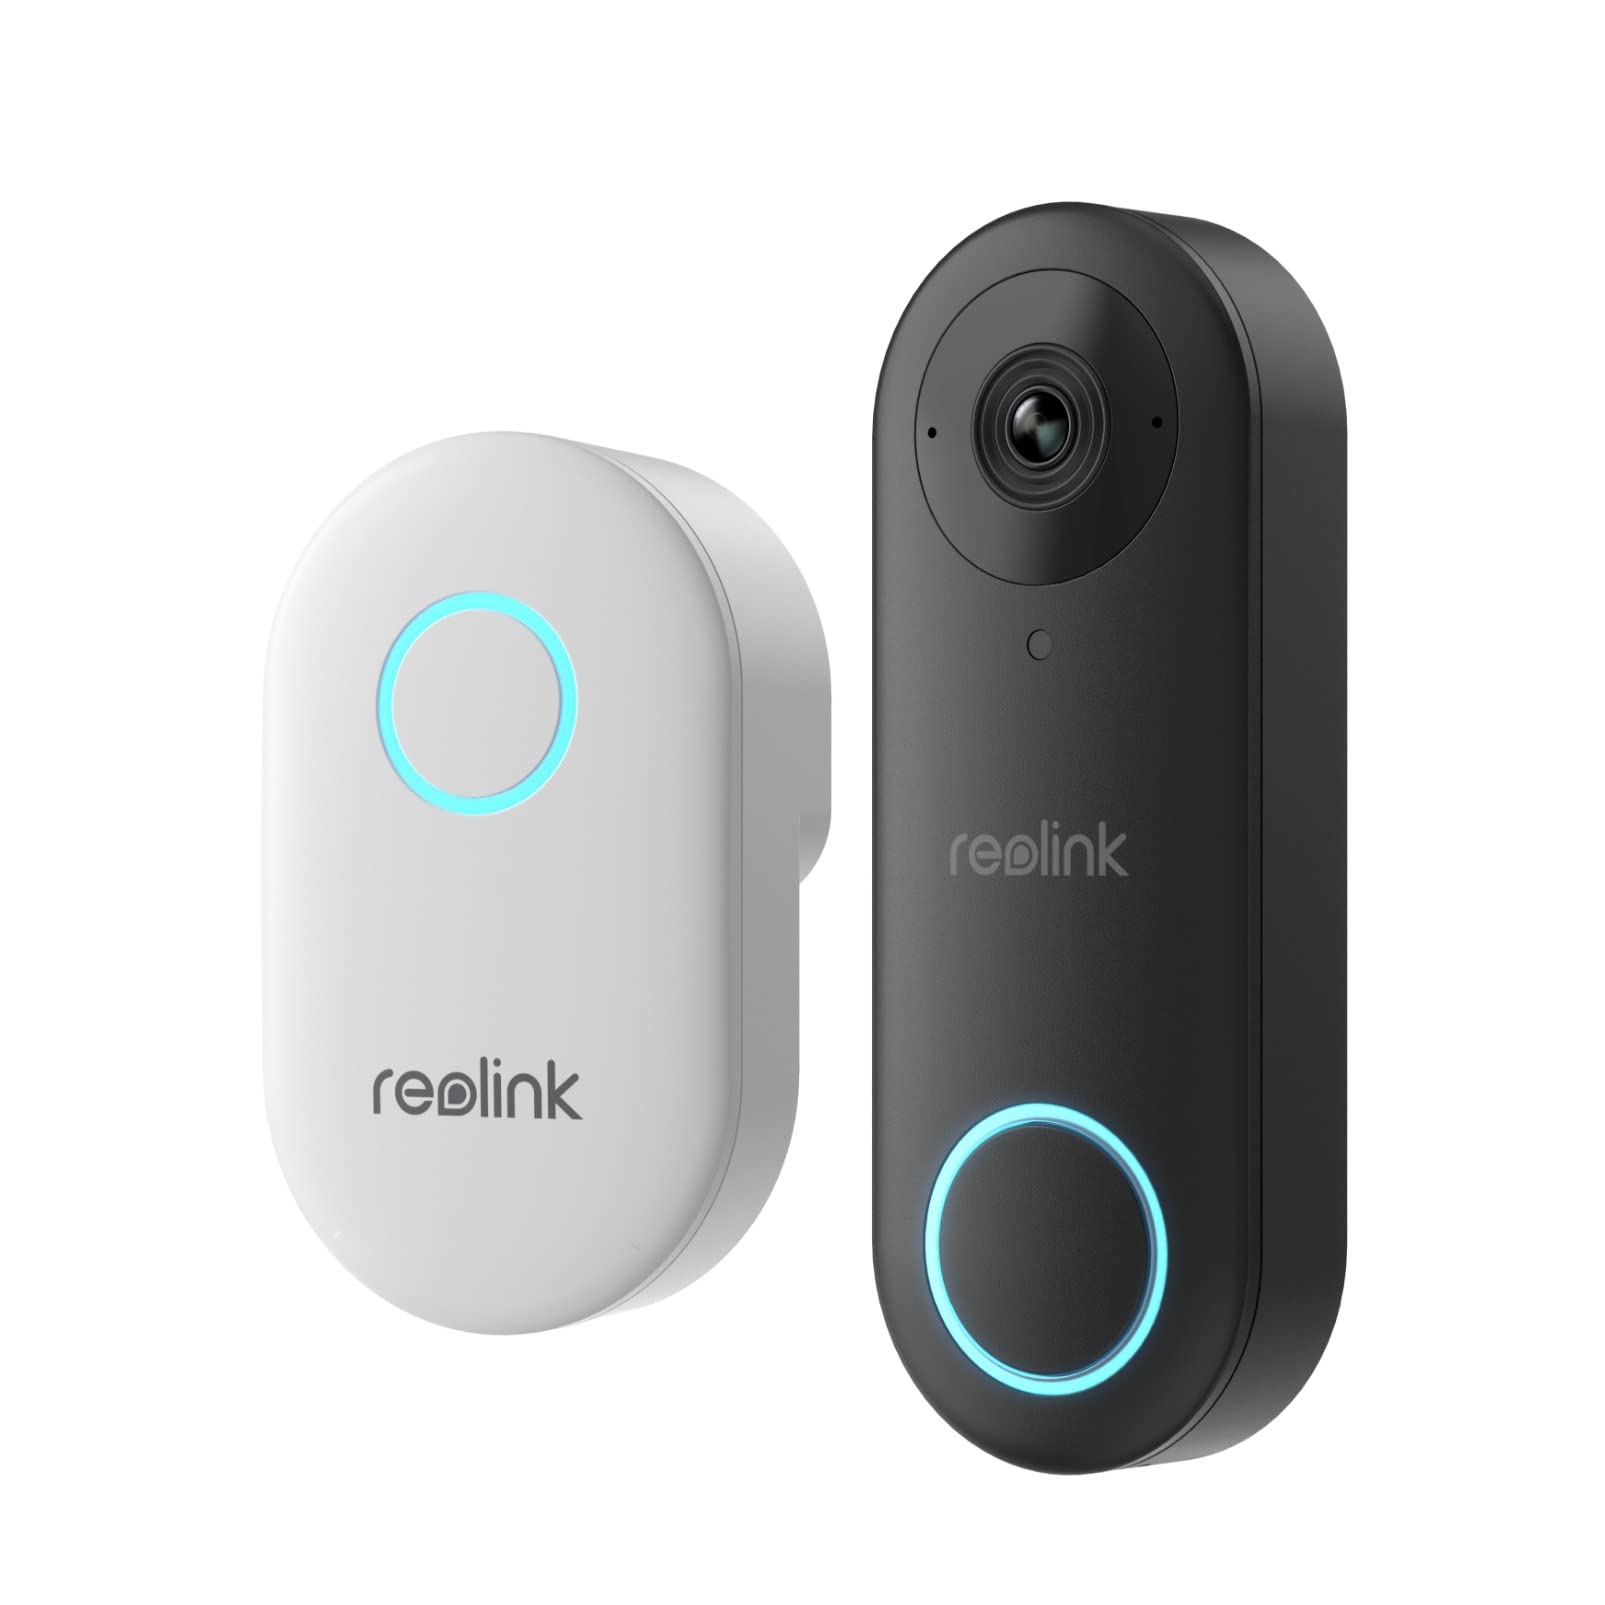  Reolink ドアベルWiFiカメラ - 有線5MP屋外ビデオドアベル、5G Wifiセキュリティカメラシステム、スマート検出SDカードストレージサブスクリプションな...